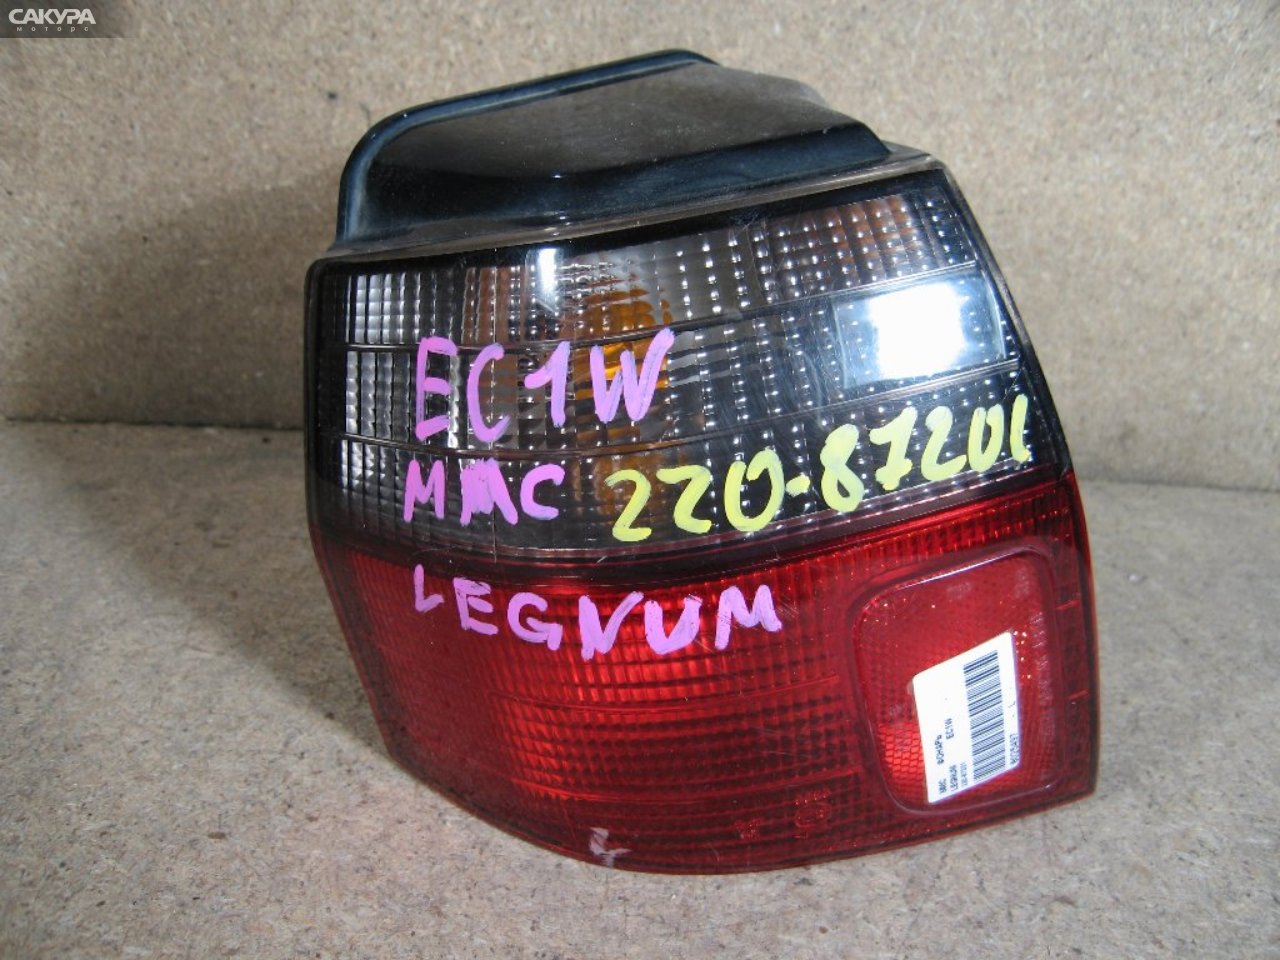 Фонарь стоп-сигнала левый Mitsubishi Legnum EC1W 220-87201: купить в Сакура Абакан.